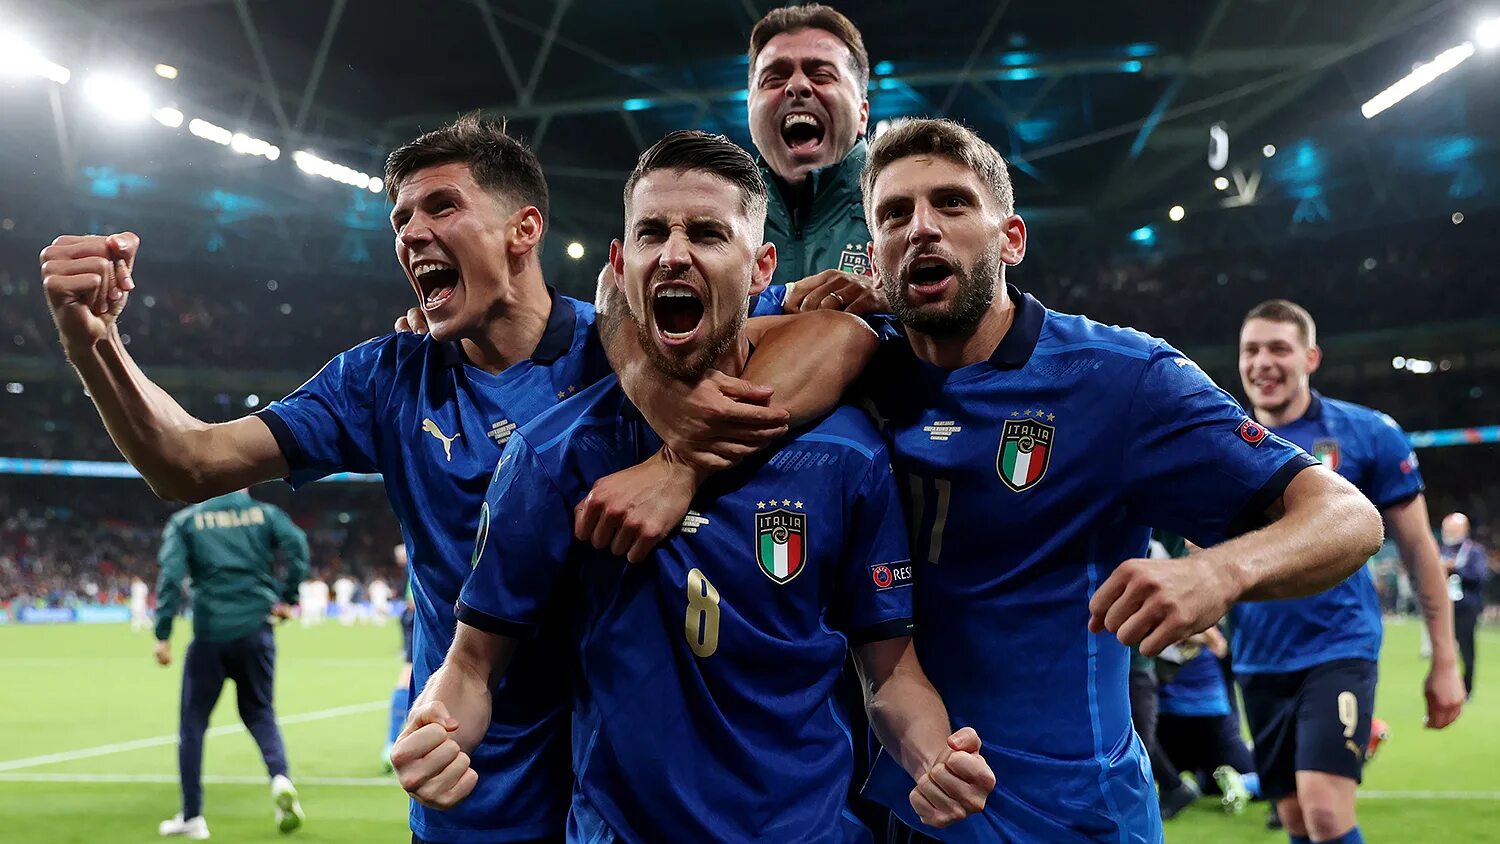 Прогнозы на футбол на сегодня италия. Сборная Италии по футболу евро 2020. Сборная Италии по футболу 2021 евро. Сборная Италии чемпион Европы. Финал евро 2020 по футболу Италия Англия.